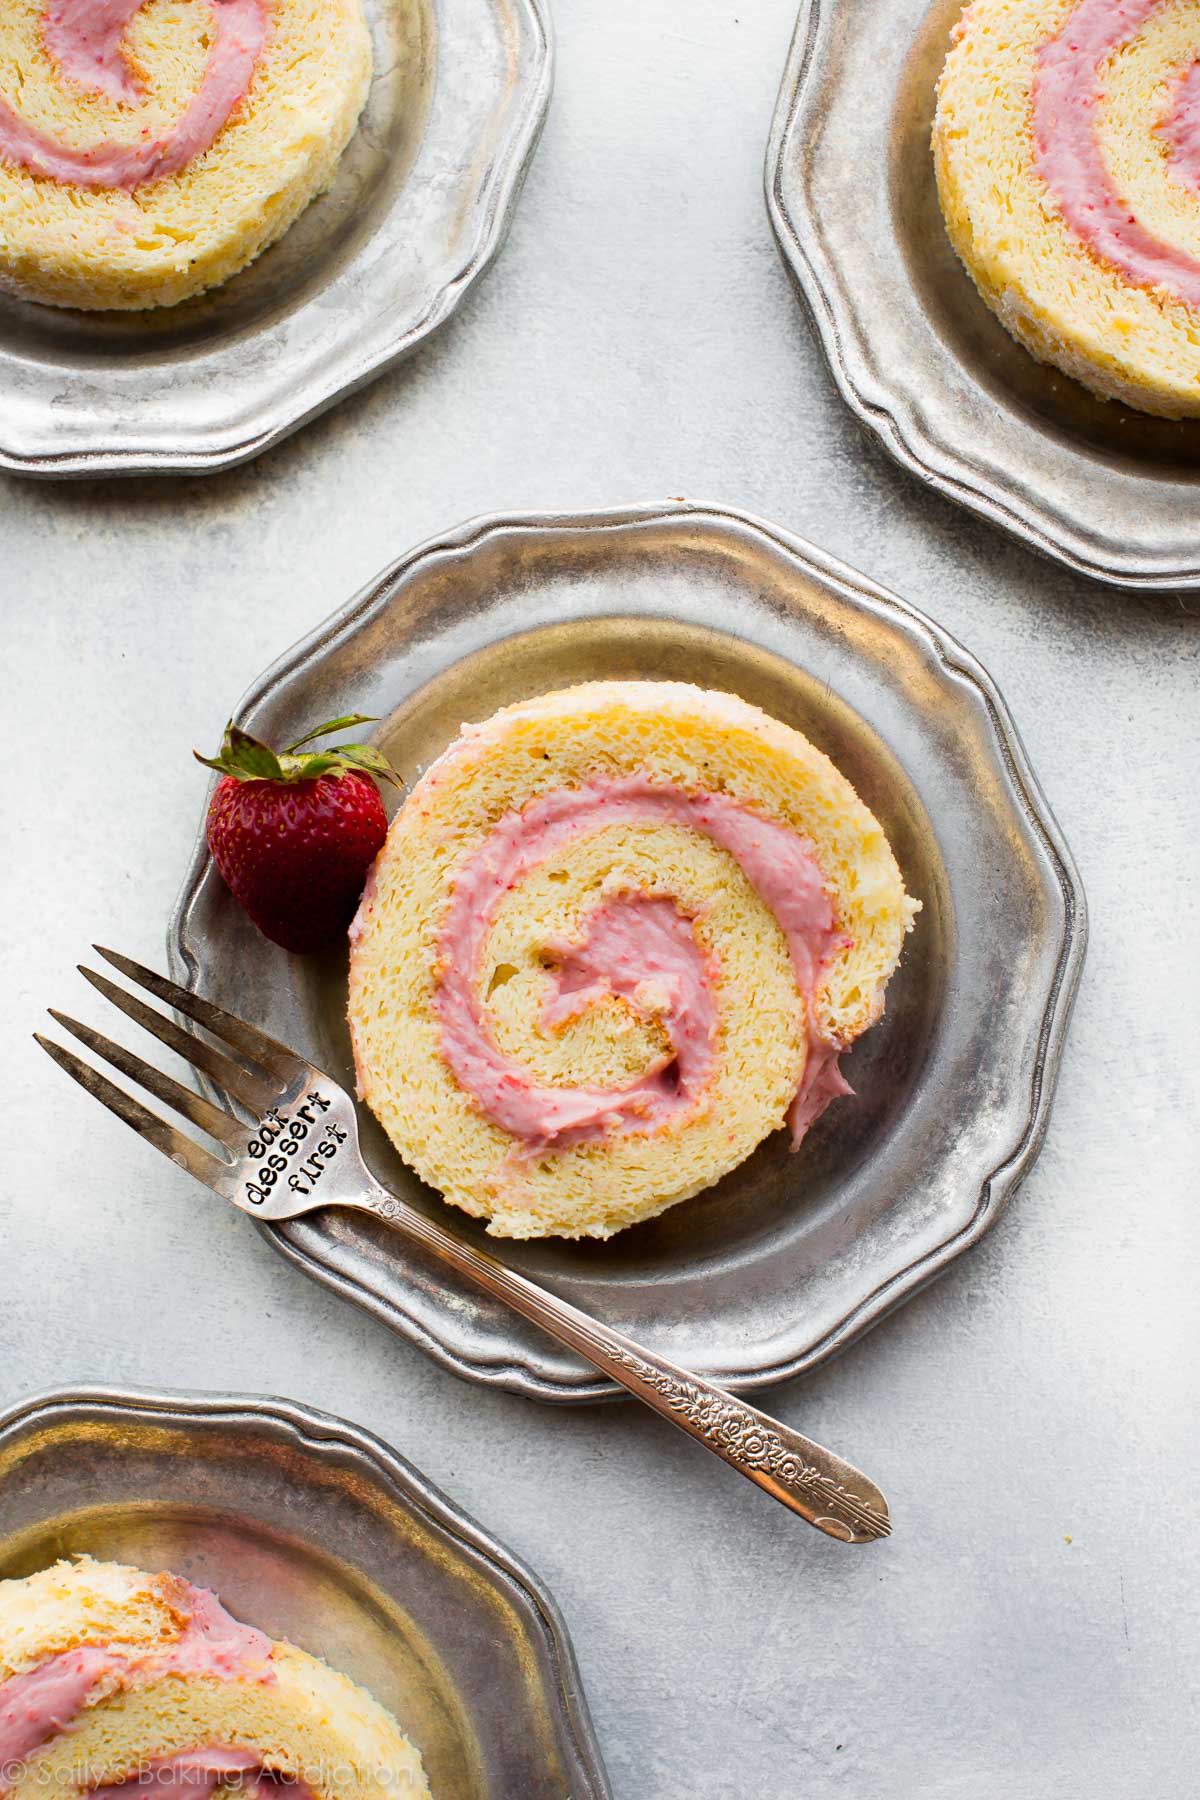 AIMER ce rouleau de gâteau aux fraises et à la crème léger et moelleux! Gâteau roulé à la gelée d'éponge avec une délicieuse garniture à la crème de fraise. Recette et tutoriel sur sallysbakingaddiction.com